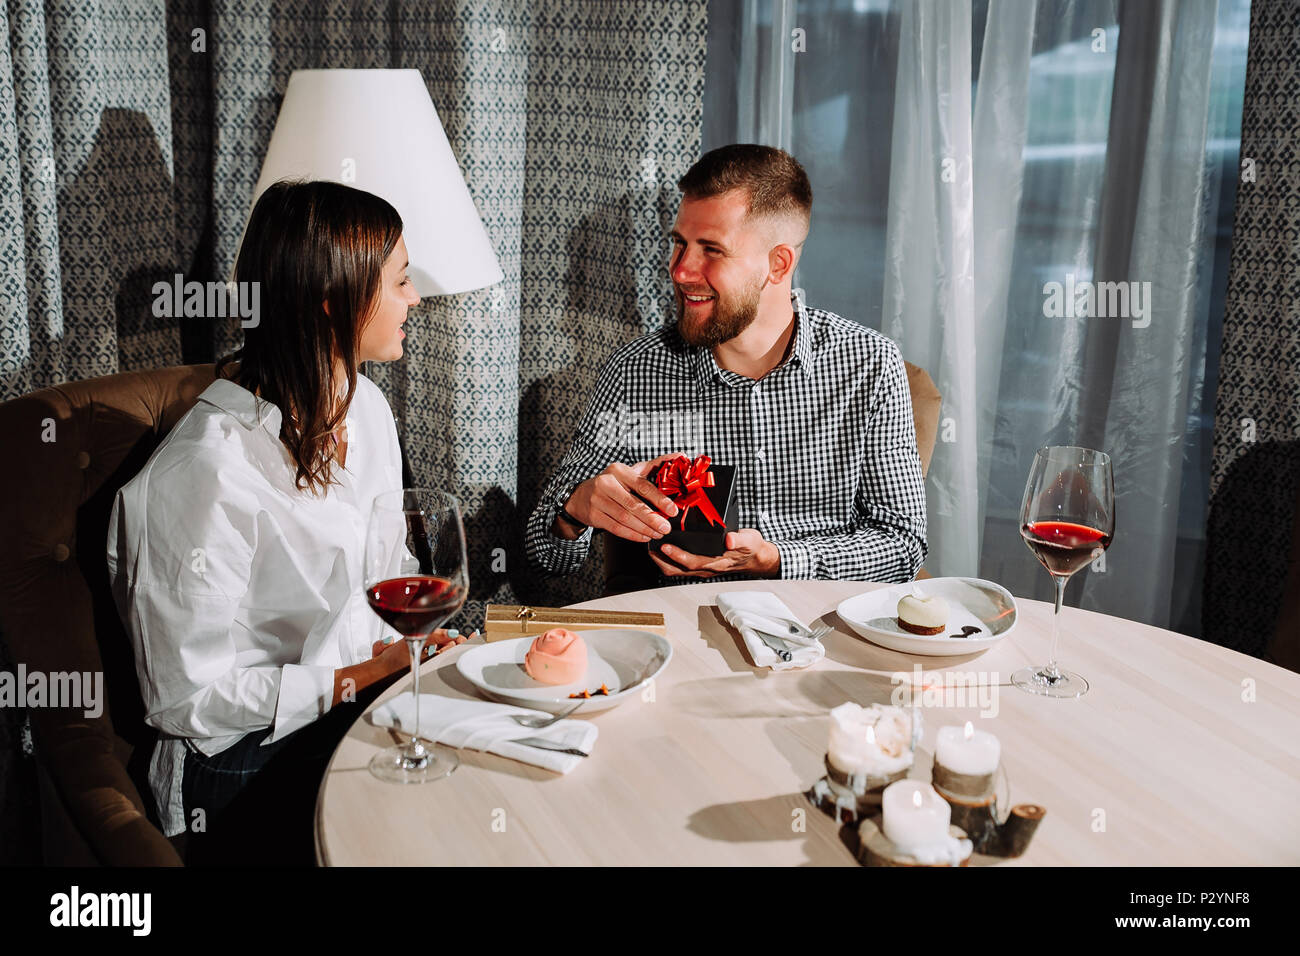 Un homme ouvre une boîte-cadeau à une date.side view portrait of laughing couple enjoying date in cafe Banque D'Images